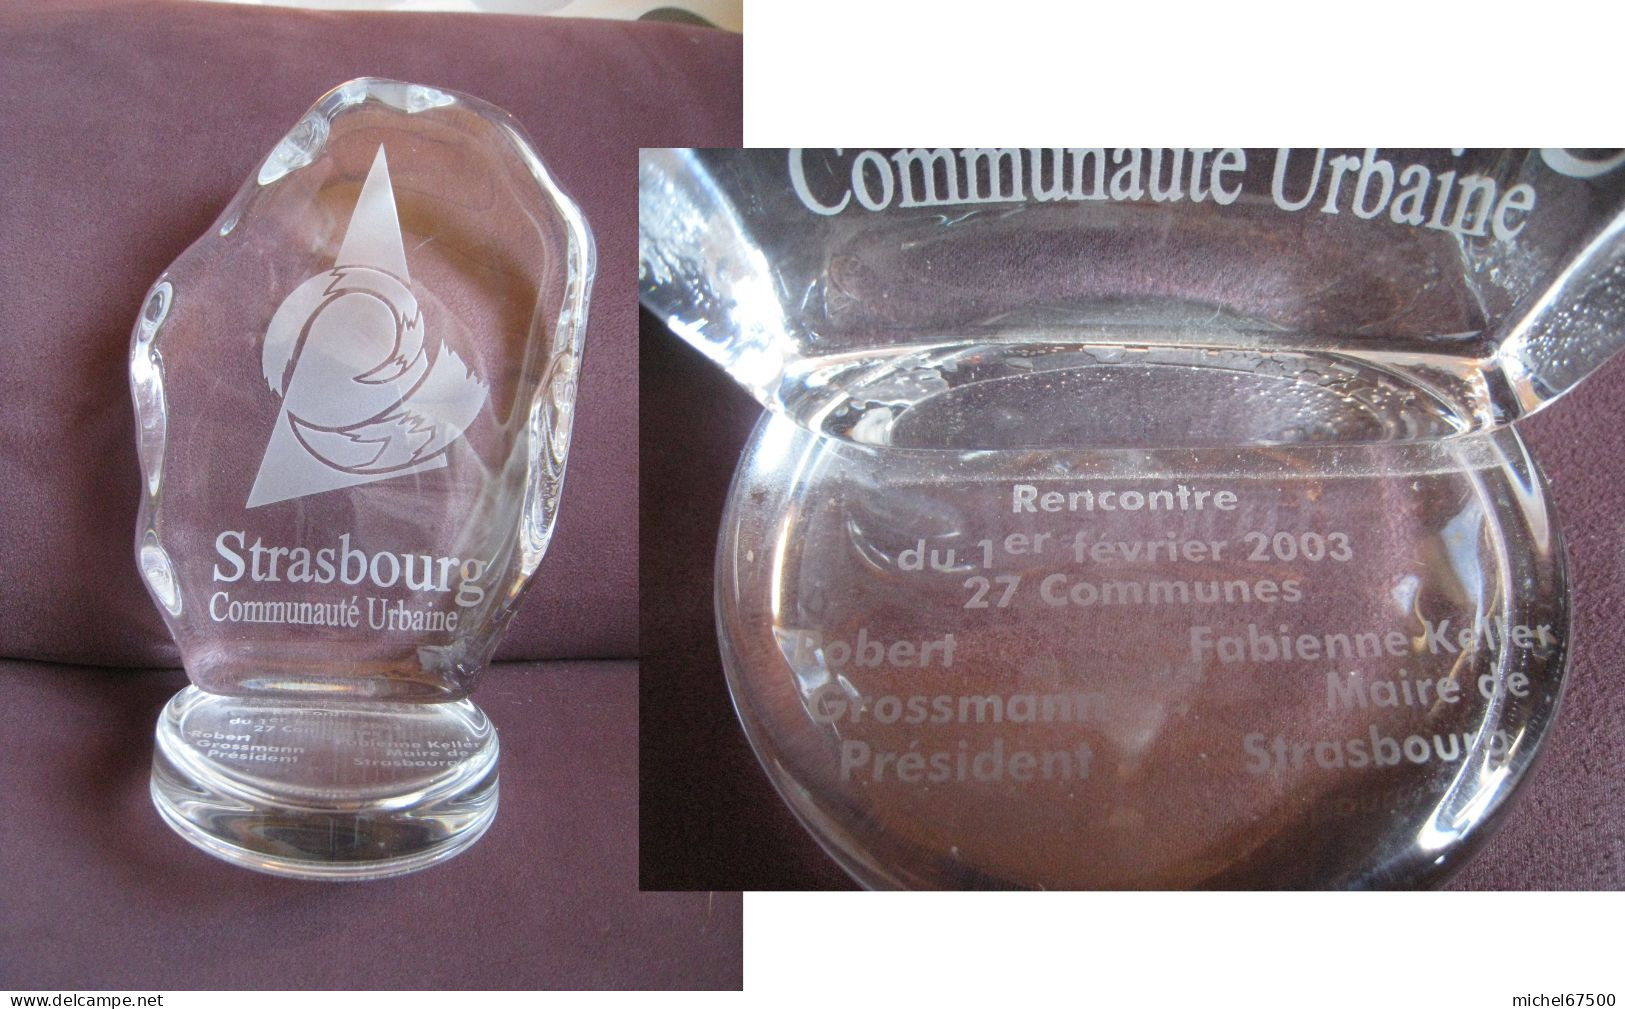 STRASBOURG Communauté Urbaine Objet Commémoratif  Rencontre Du 1er Février 2003 27 Communes - Recordatorios